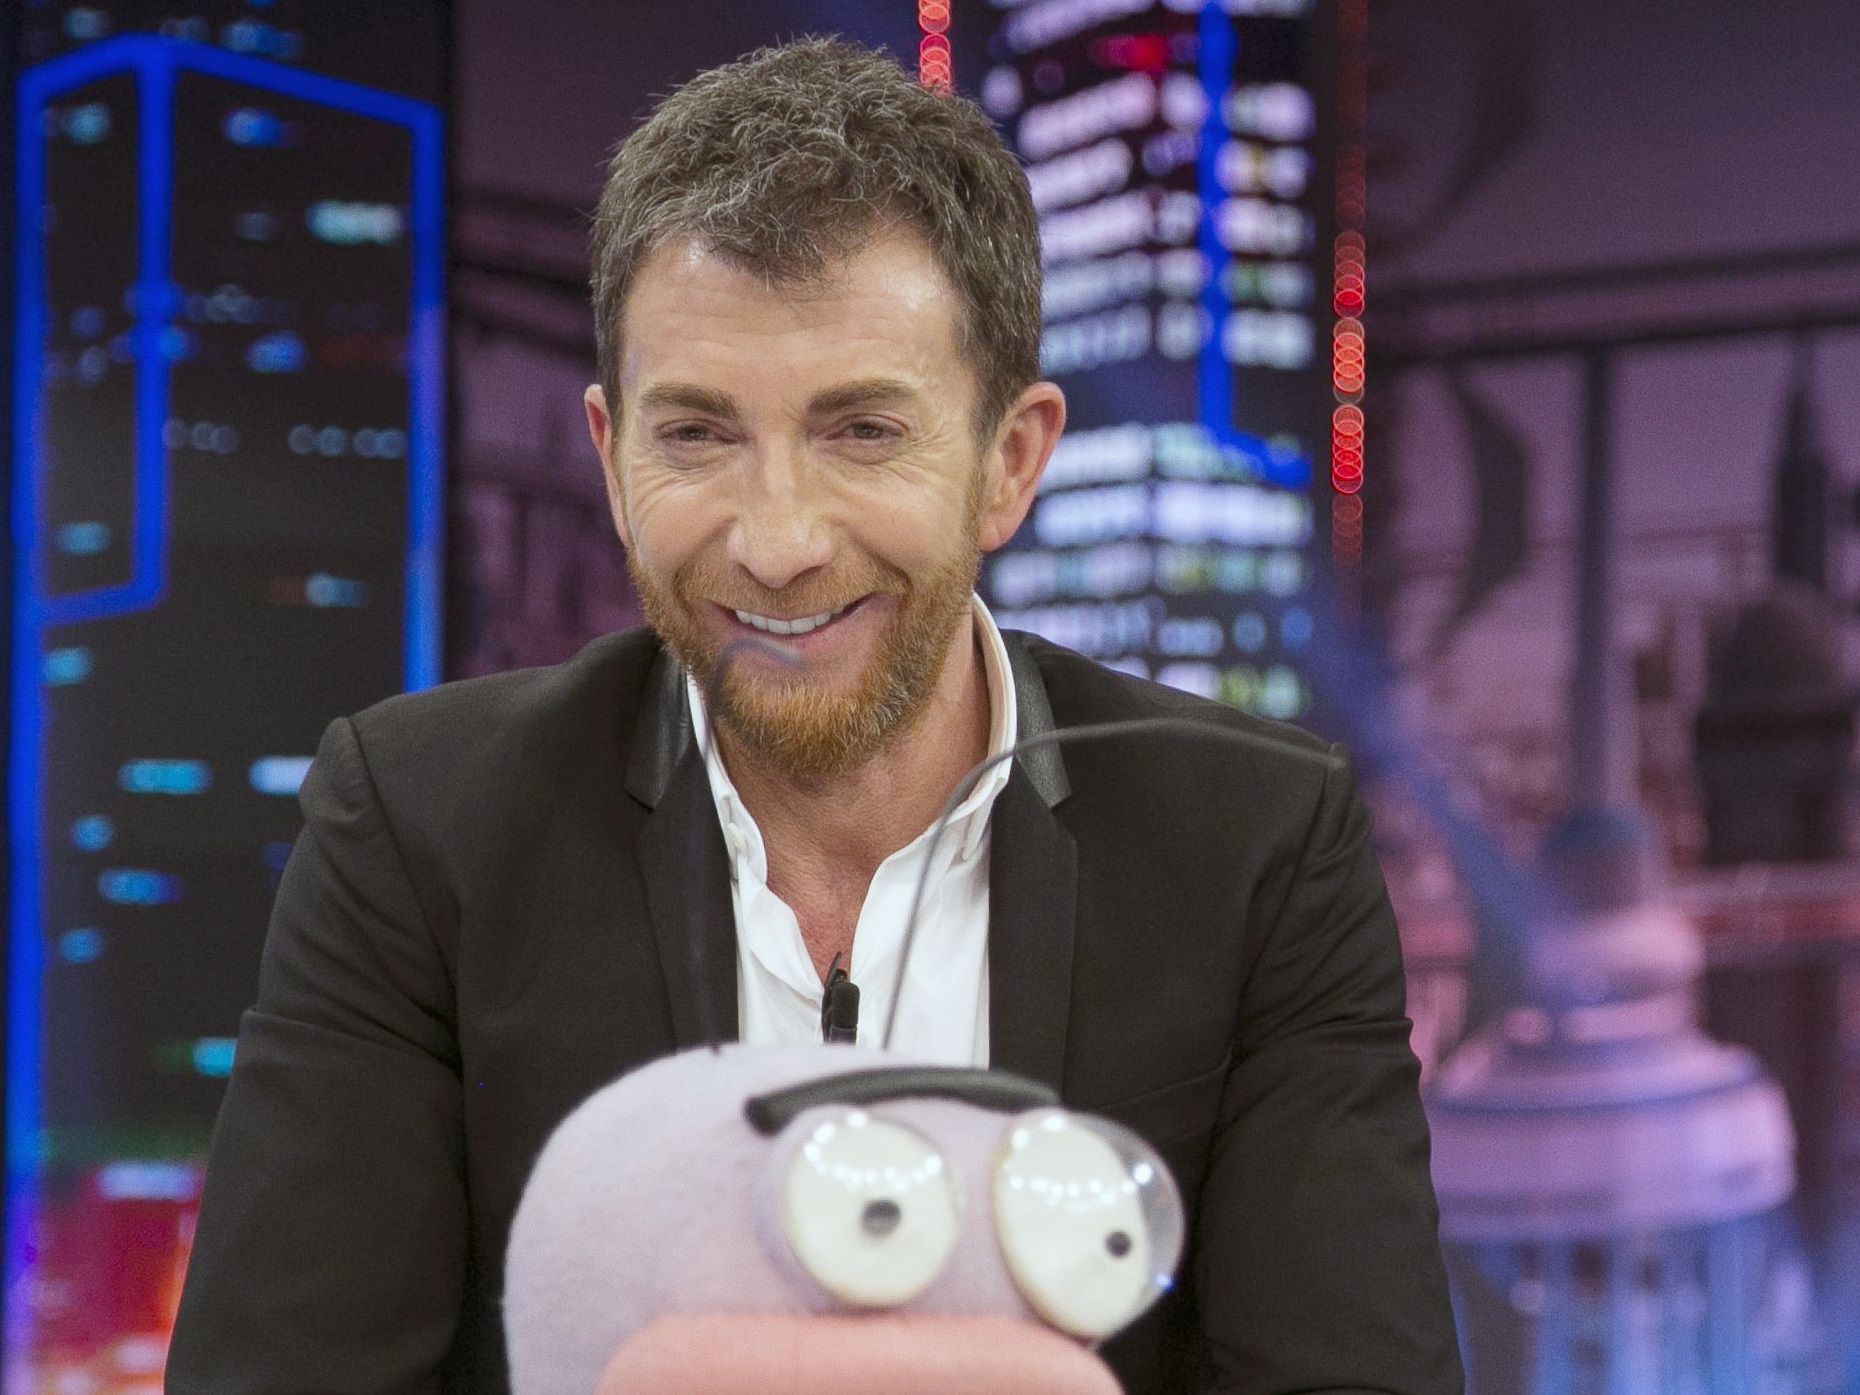 Pablo Motos es uno de los presentadores más populares de Españana 
EUROPA ESPAÑA SOCIEDAD
EUROPA PRESS REPORTAJES
